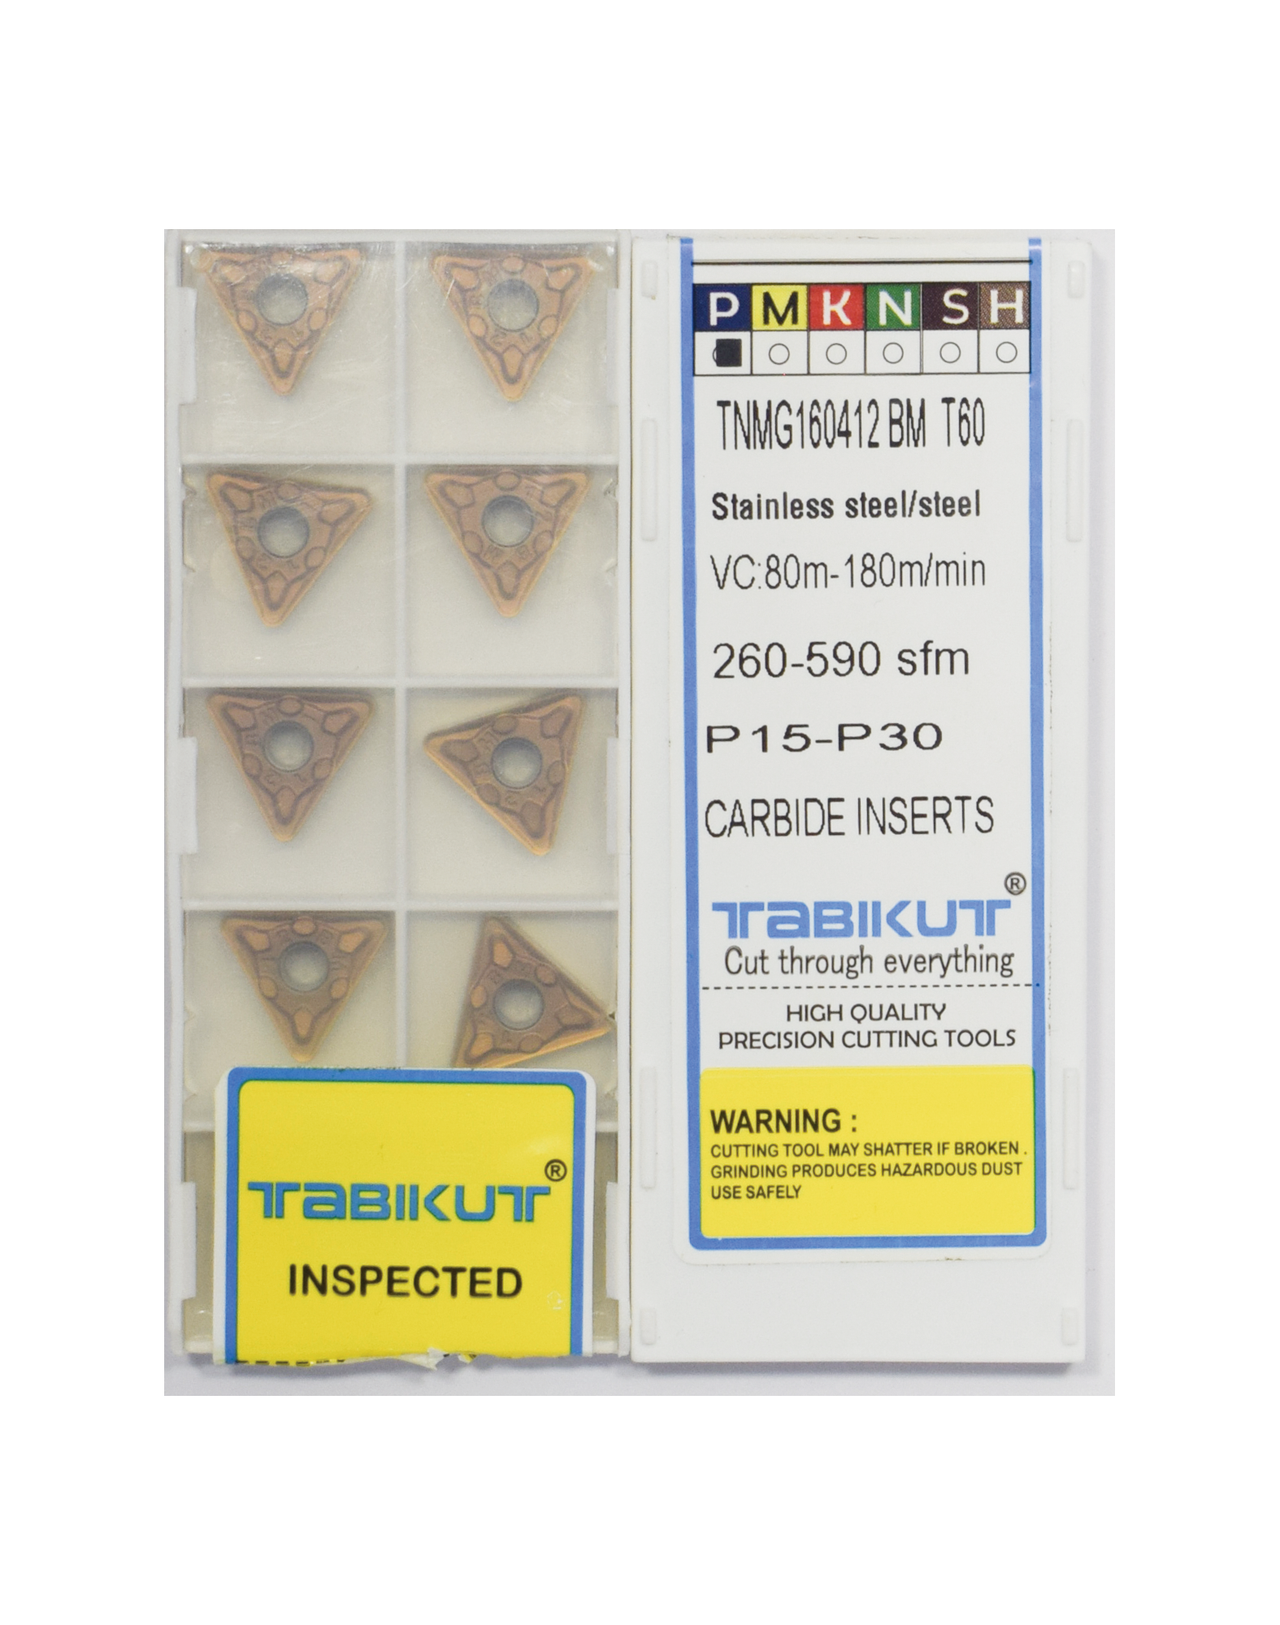 TNMG1604/04/08/12 BM T60 Tabikut Stainless Steel Grade insert pack of 10